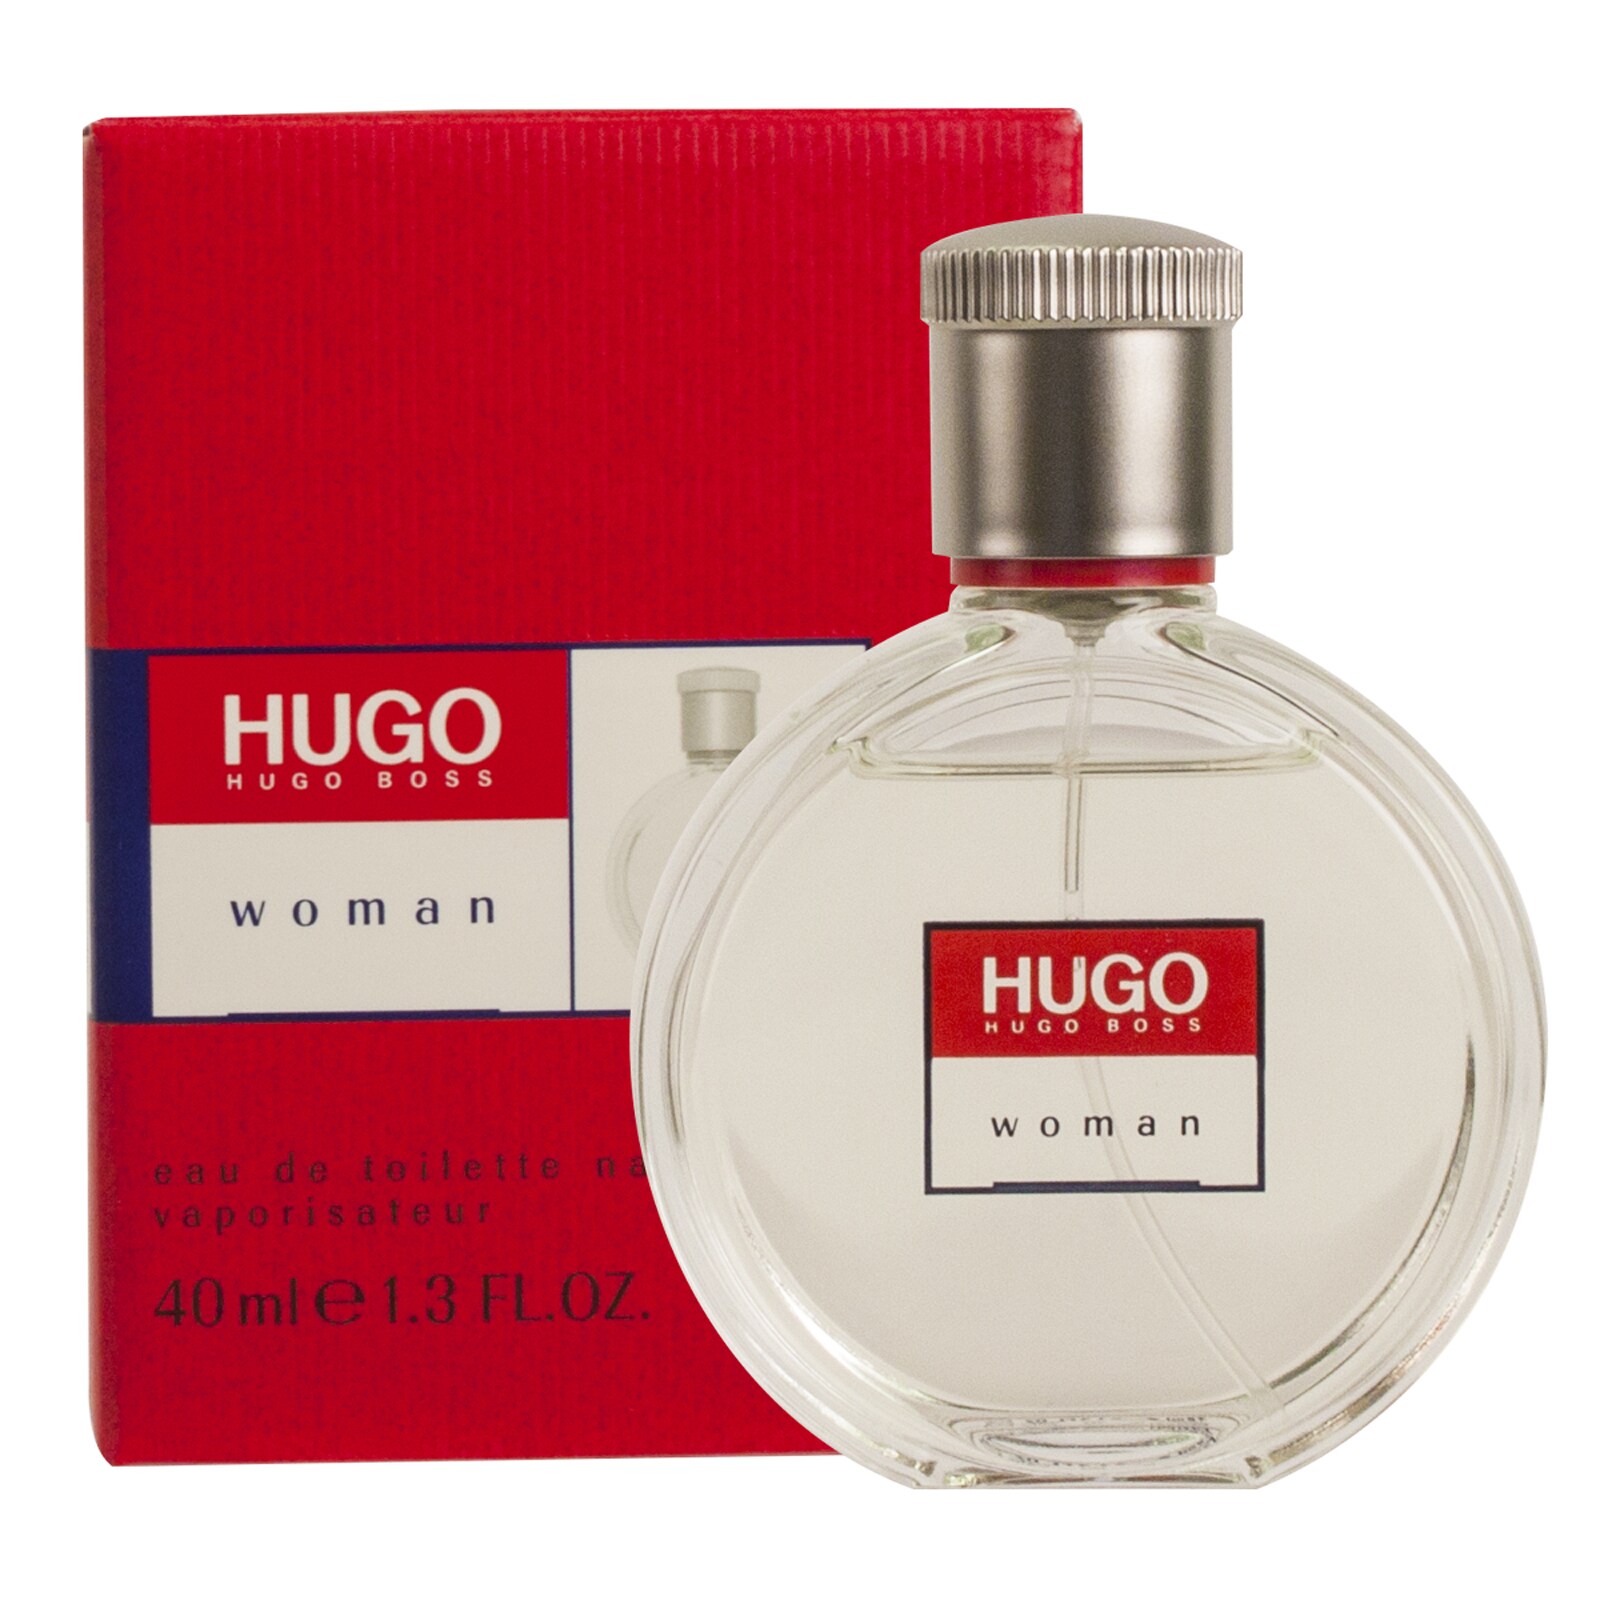 Купит hugo woman. Хуго босс Вумен красные. Хьюго босс Хьюго Вумен. H-001 Hugo Hugo Boss. H-004 Hugo Boss Hugo women.